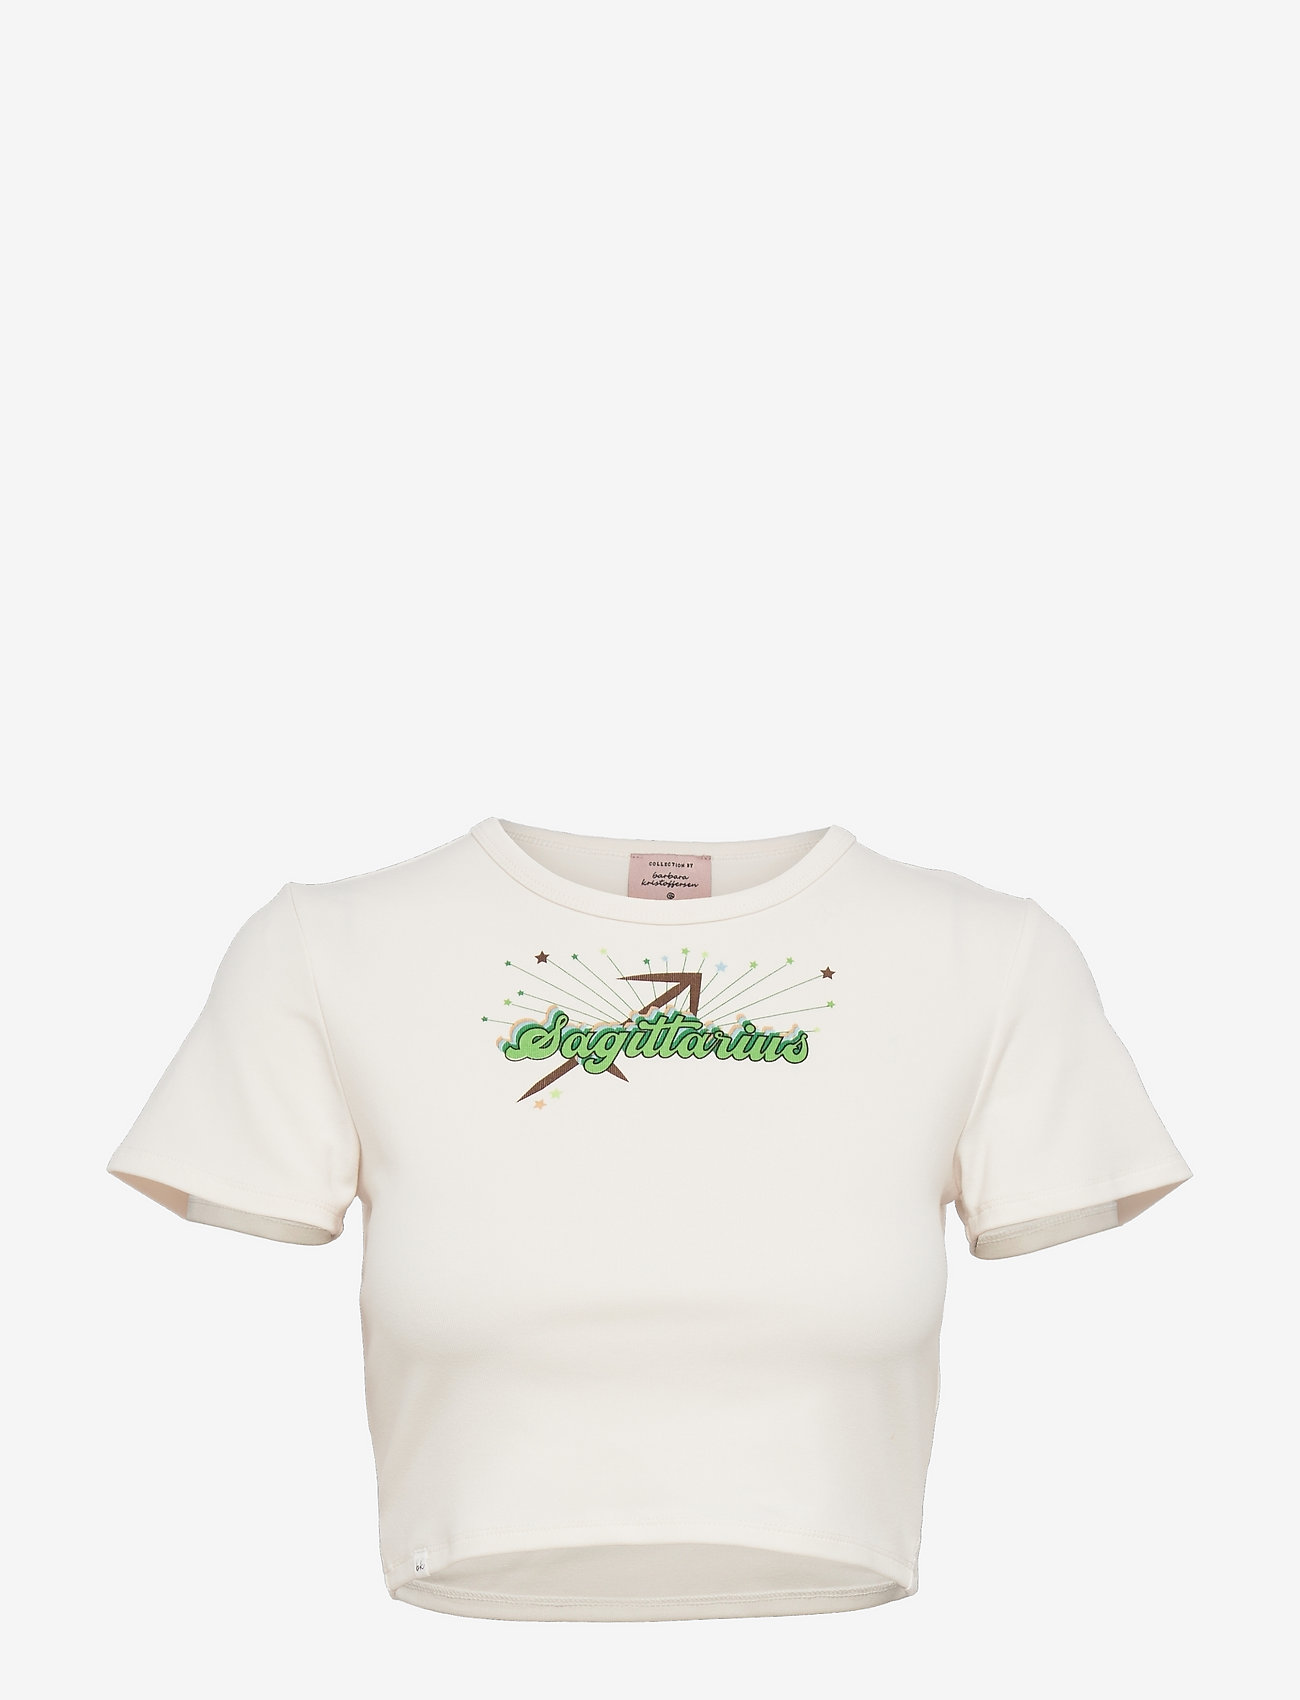 Barbara Kristoffersen by Rosemunde - T-shirt ss - mažiausios kainos - sagittarius print - 0